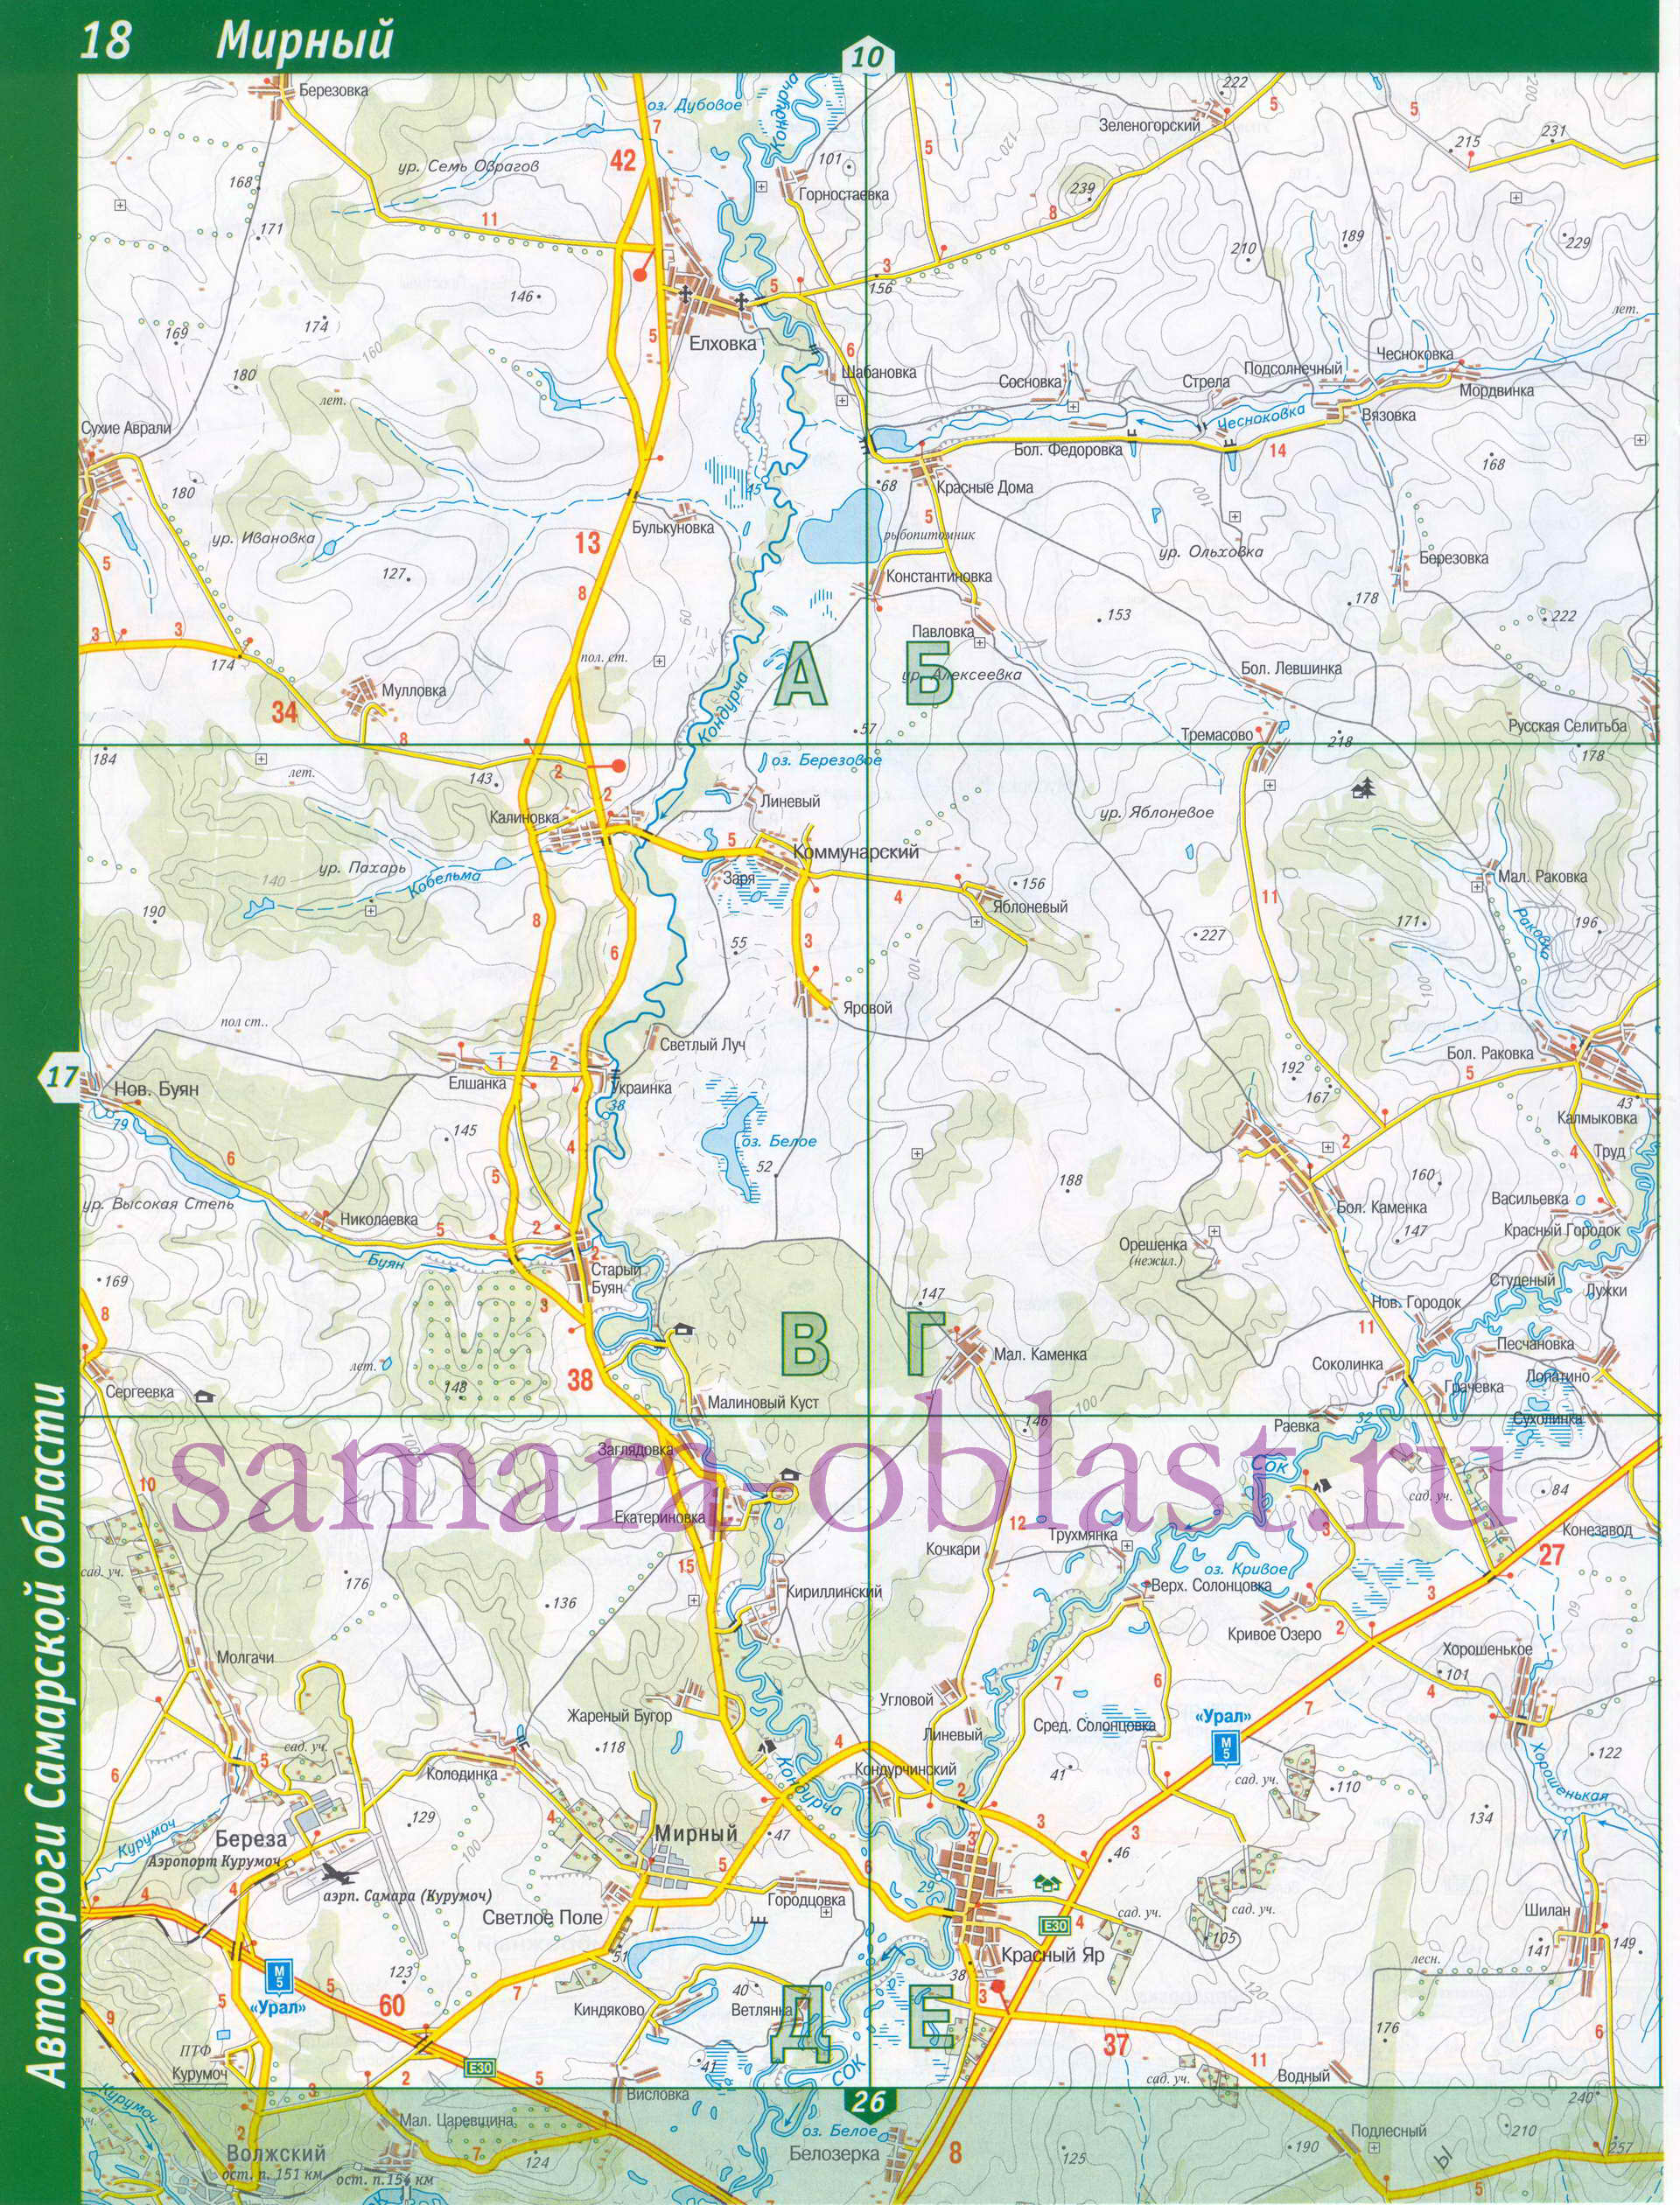 Карта Самарской области топографическая. Подробная топографическая карта Самарской области масштаба 1см:2км, D0 - 